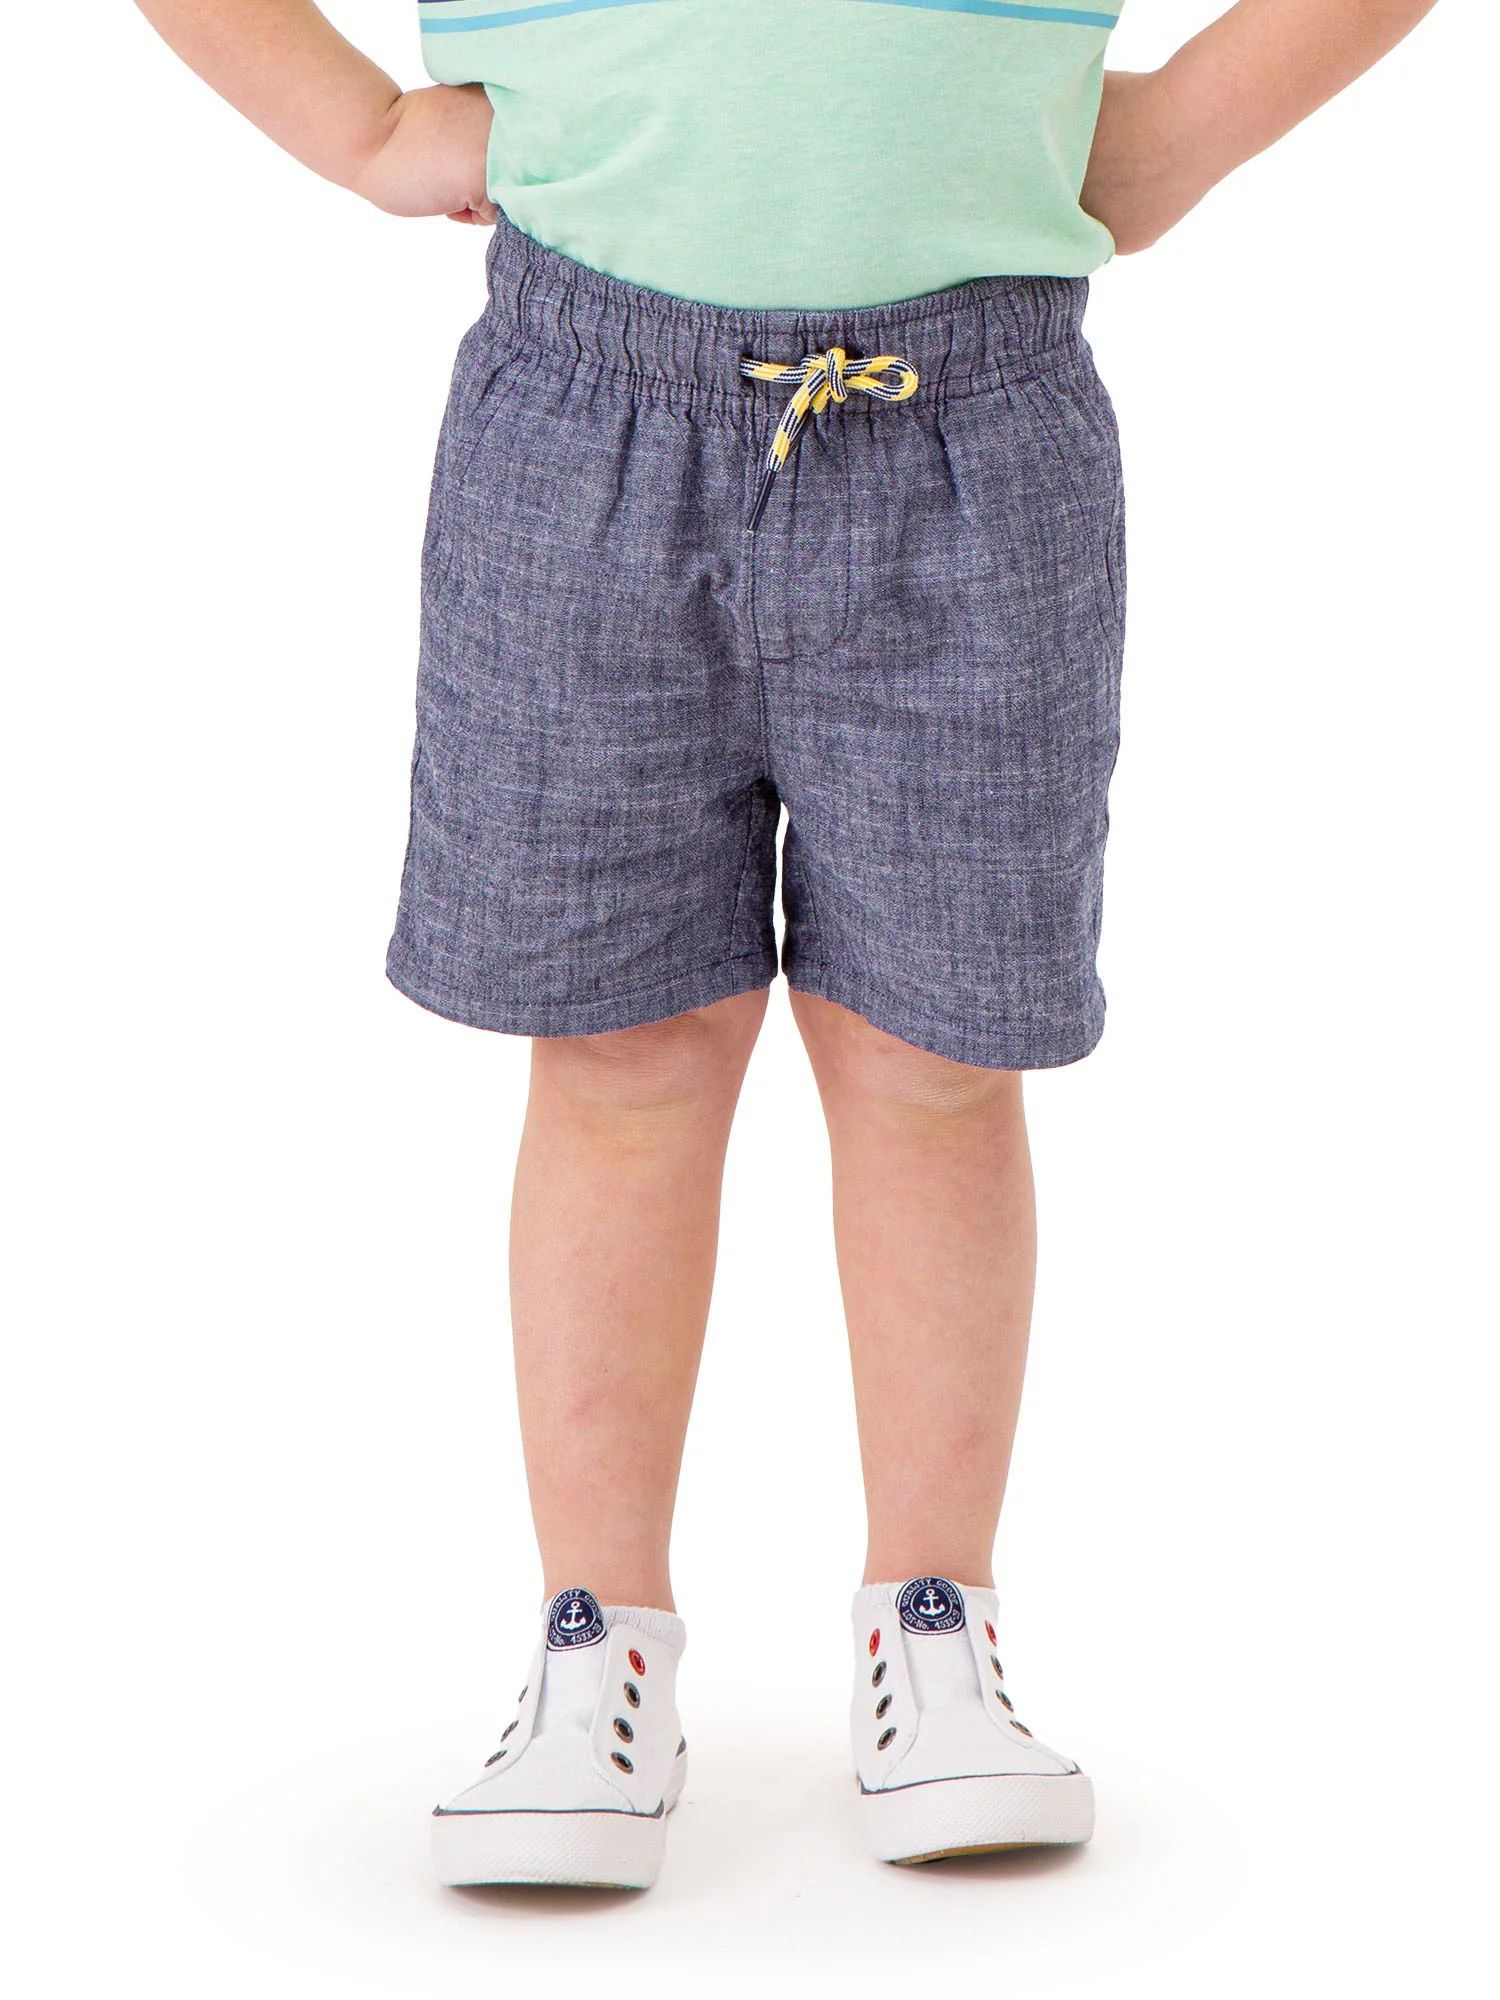 U.S. Polo Assn. Toddler Boy Woven Short, Sizes 2T-5T | Walmart (US)